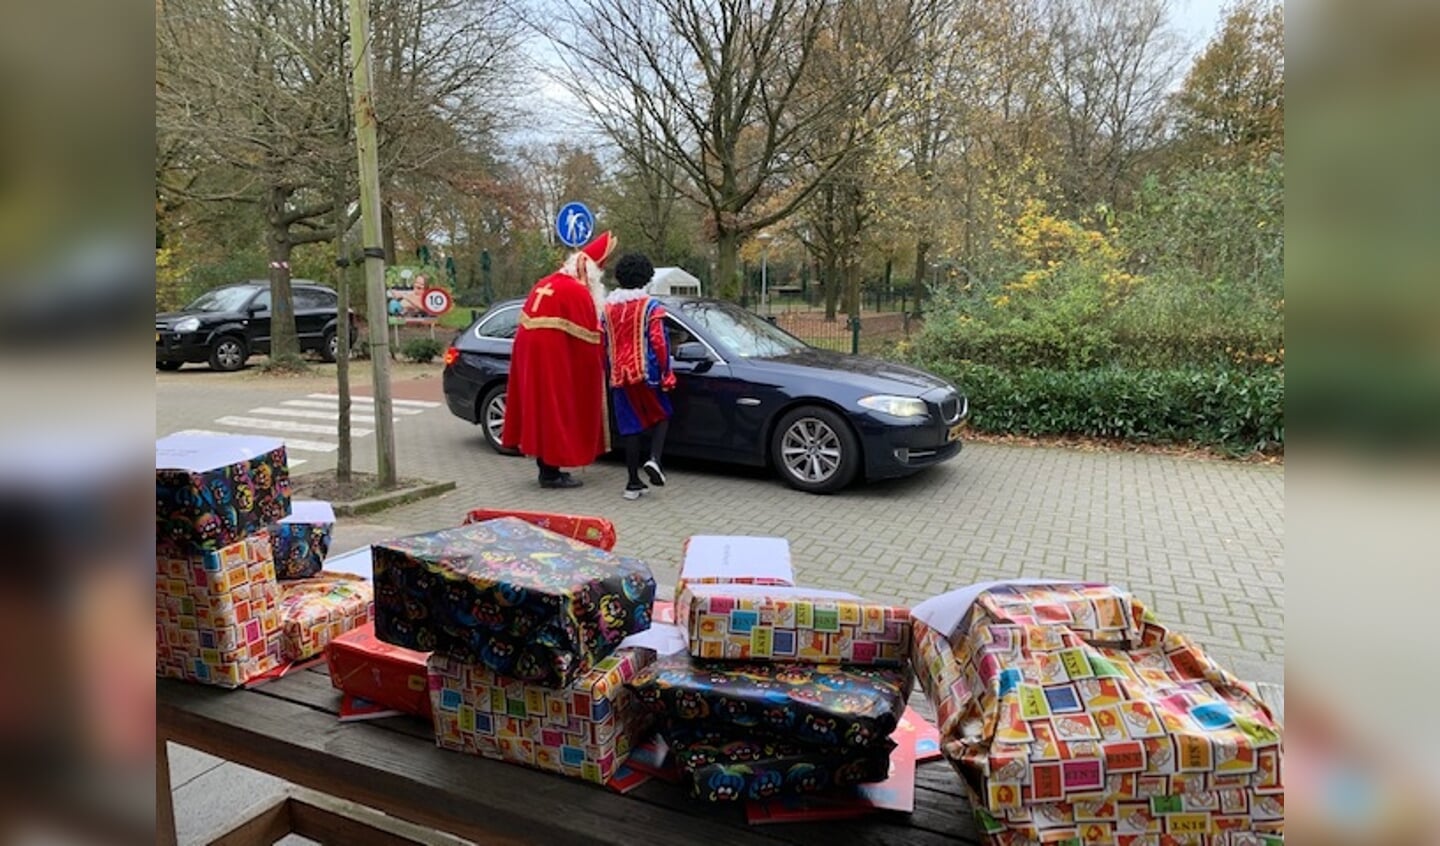 De drive thru Zonhove waar de kinderen werden verwelkomd door Sinterklaas en zijn Pieten